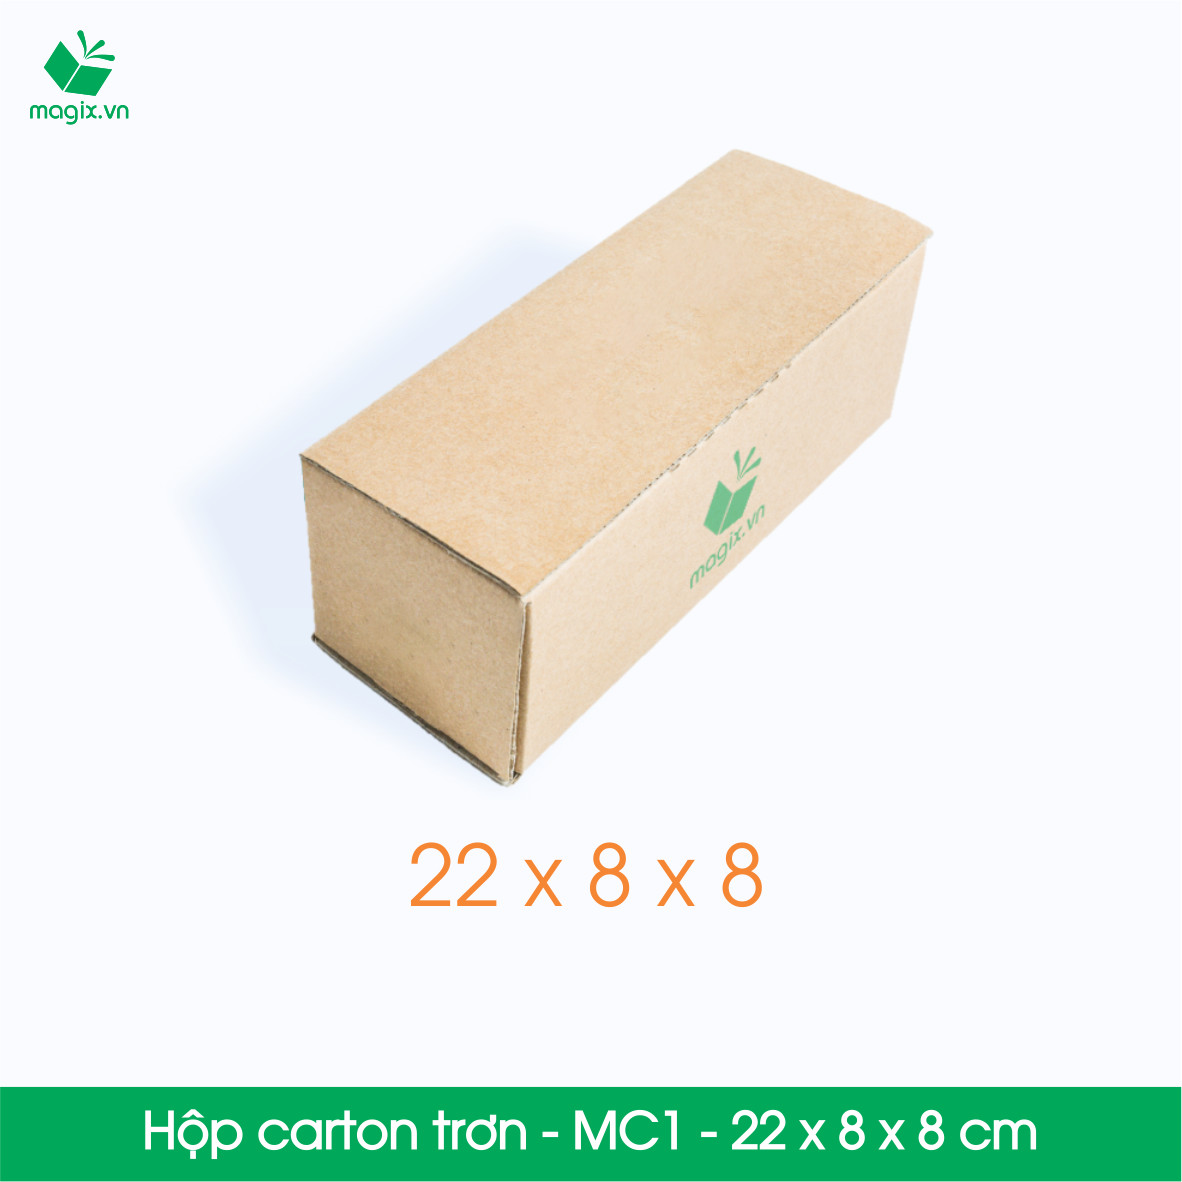 MC1 - 22x8x8 cm - 25 Thùng hộp carton trơn đóng hàng